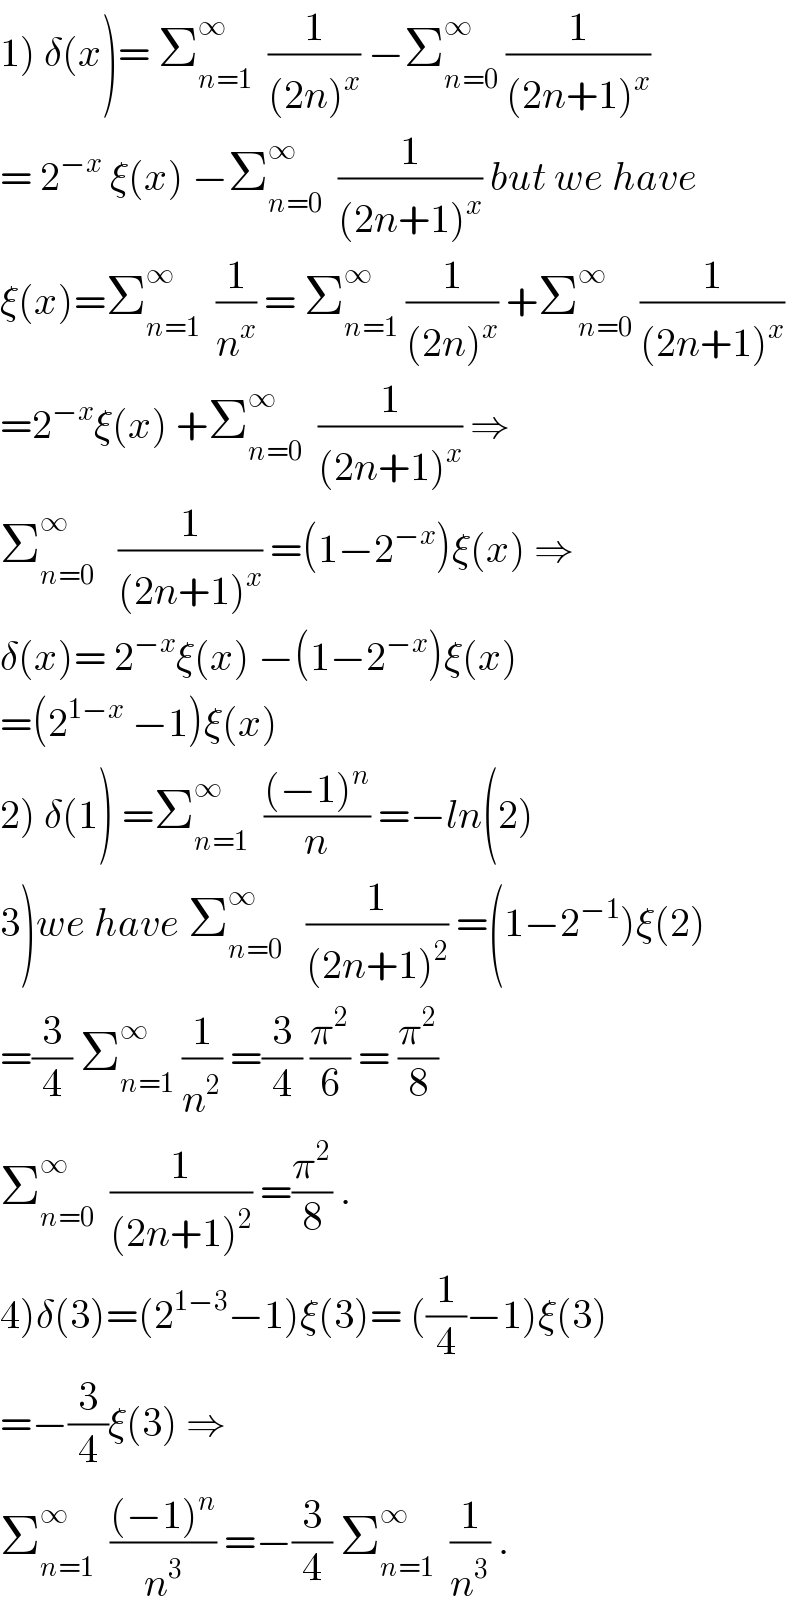 1) δ(x)= Σ_(n=1) ^∞   (1/((2n)^x )) −Σ_(n=0) ^∞  (1/((2n+1)^x ))  = 2^(−x)  ξ(x) −Σ_(n=0) ^∞   (1/((2n+1)^x )) but we have  ξ(x)=Σ_(n=1) ^∞   (1/n^x ) = Σ_(n=1) ^∞  (1/((2n)^x )) +Σ_(n=0) ^∞  (1/((2n+1)^x ))  =2^(−x) ξ(x) +Σ_(n=0) ^∞   (1/((2n+1)^x )) ⇒  Σ_(n=0) ^∞    (1/((2n+1)^x )) =(1−2^(−x) )ξ(x) ⇒  δ(x)= 2^(−x) ξ(x) −(1−2^(−x) )ξ(x)  =(2^(1−x)  −1)ξ(x)  2) δ(1) =Σ_(n=1) ^∞   (((−1)^n )/n) =−ln(2)  3)we have Σ_(n=0) ^∞    (1/((2n+1)^2 )) =(1−2^(−1) )ξ(2)  =(3/4) Σ_(n=1) ^∞  (1/n^2 ) =(3/4) (π^2 /6) = (π^2 /8)  Σ_(n=0) ^∞   (1/((2n+1)^2 )) =(π^2 /8) .  4)δ(3)=(2^(1−3) −1)ξ(3)= ((1/4)−1)ξ(3)  =−(3/4)ξ(3) ⇒  Σ_(n=1) ^∞   (((−1)^n )/n^3 ) =−(3/4) Σ_(n=1) ^∞   (1/n^3 ) .  